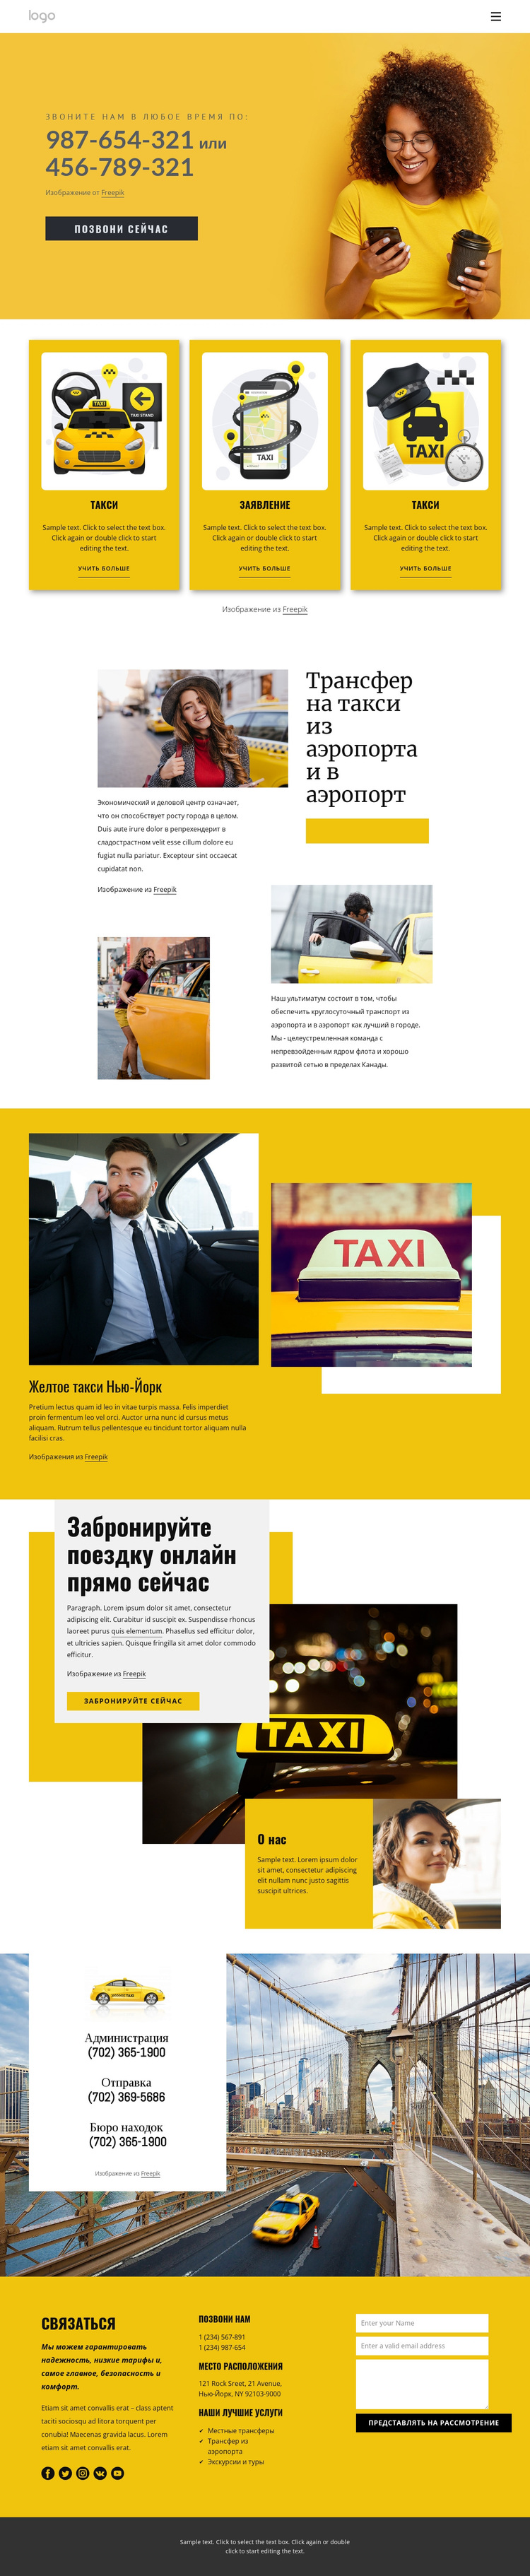 Качественное такси WordPress тема